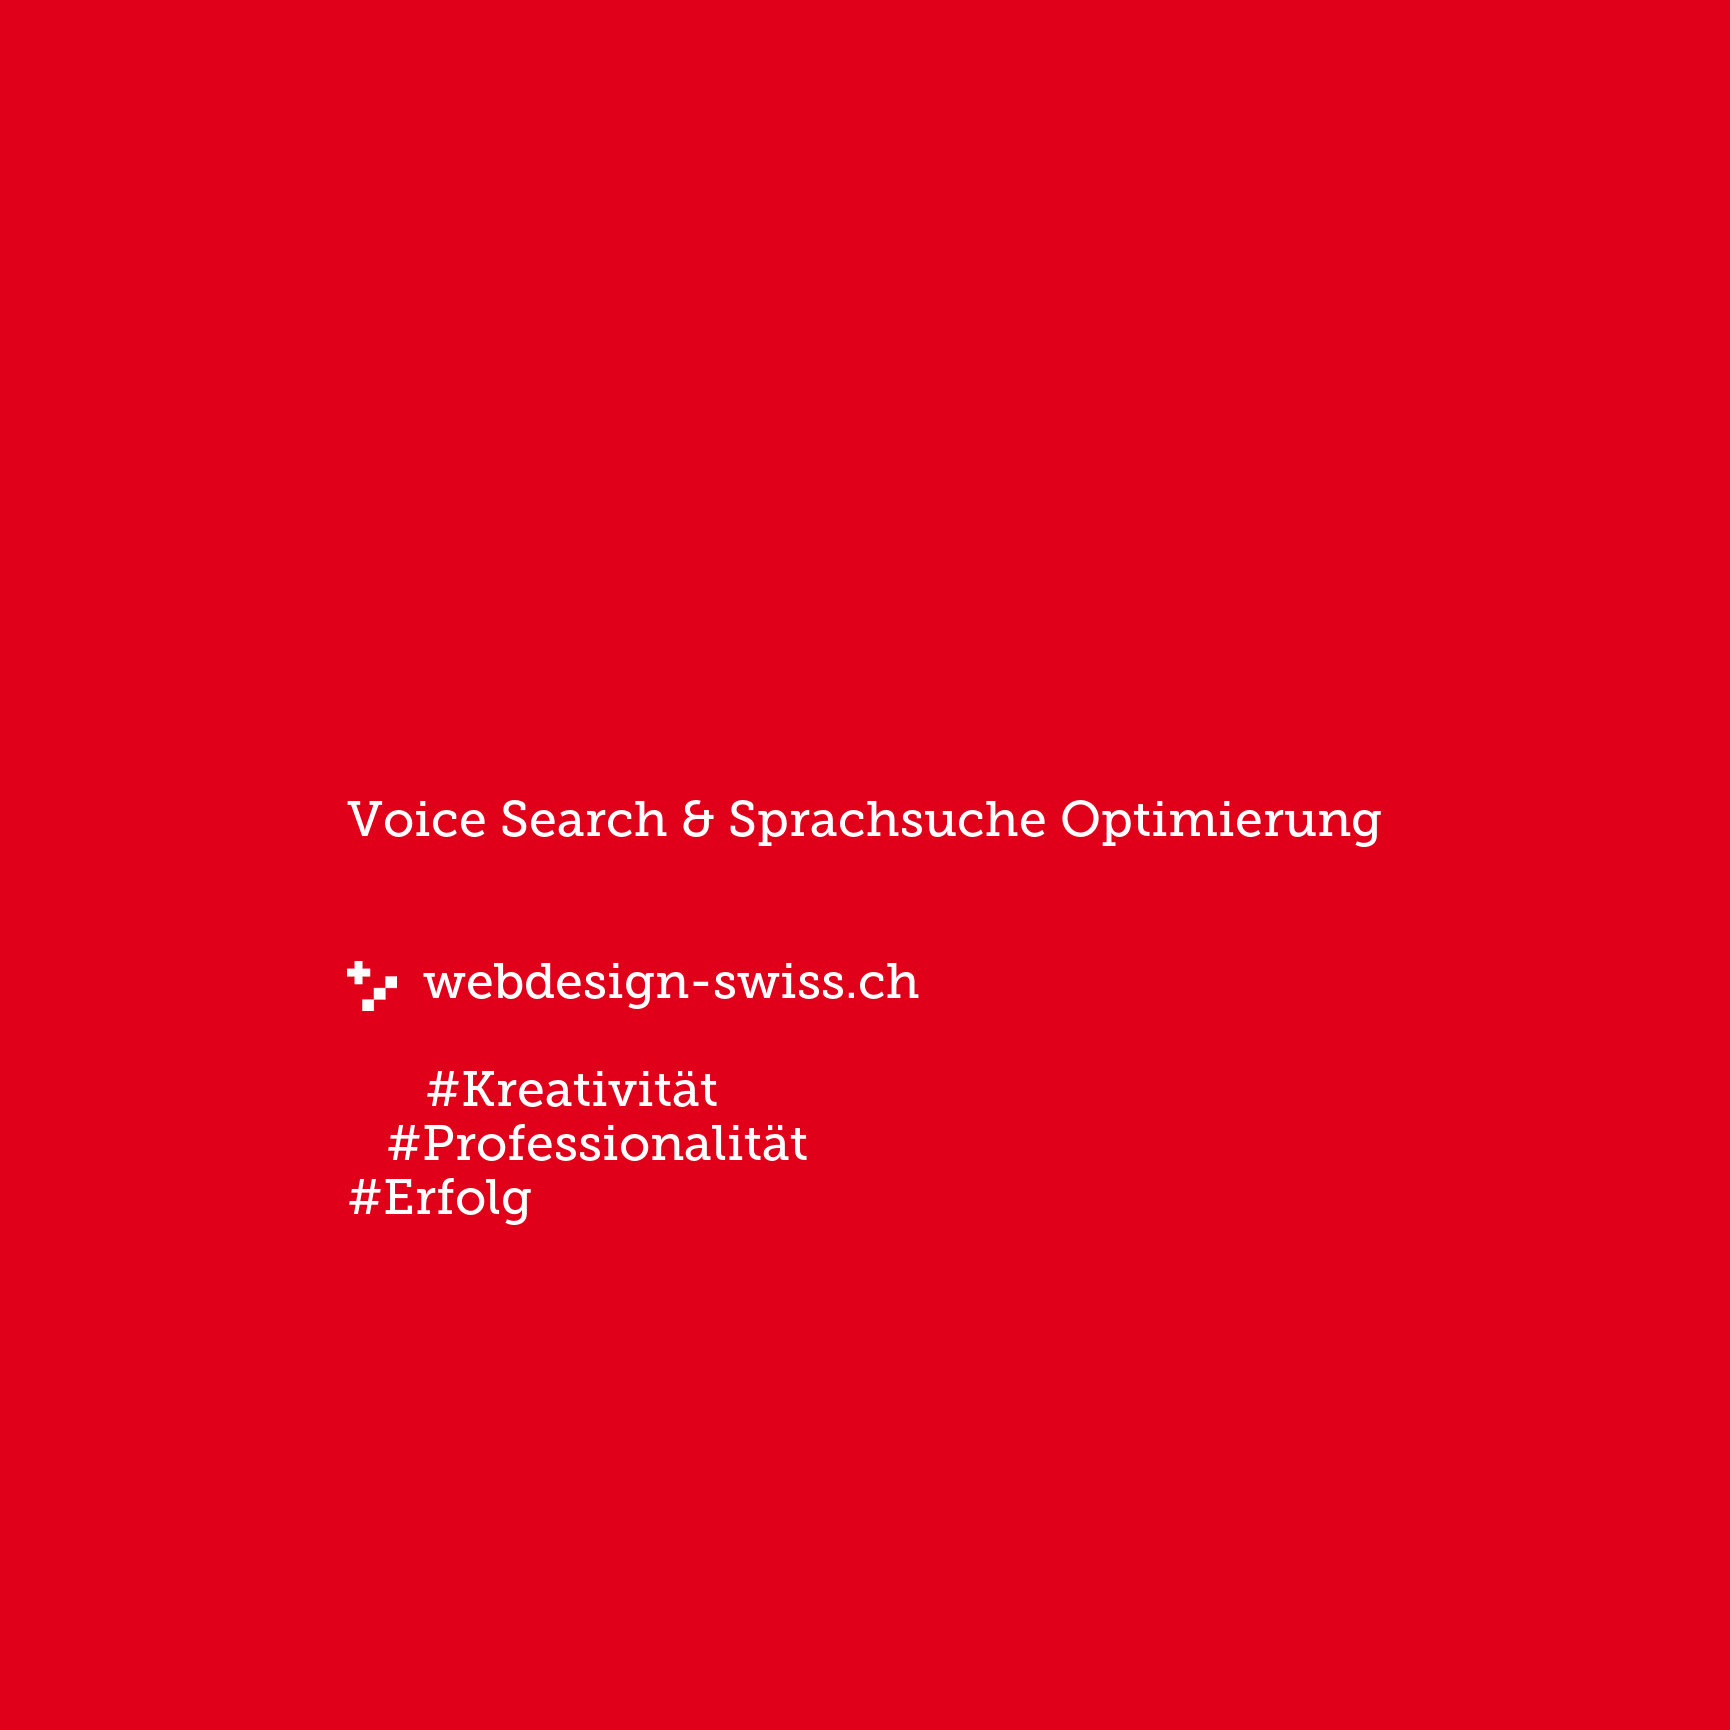 Voice Search & Sprachsuche Optimierung